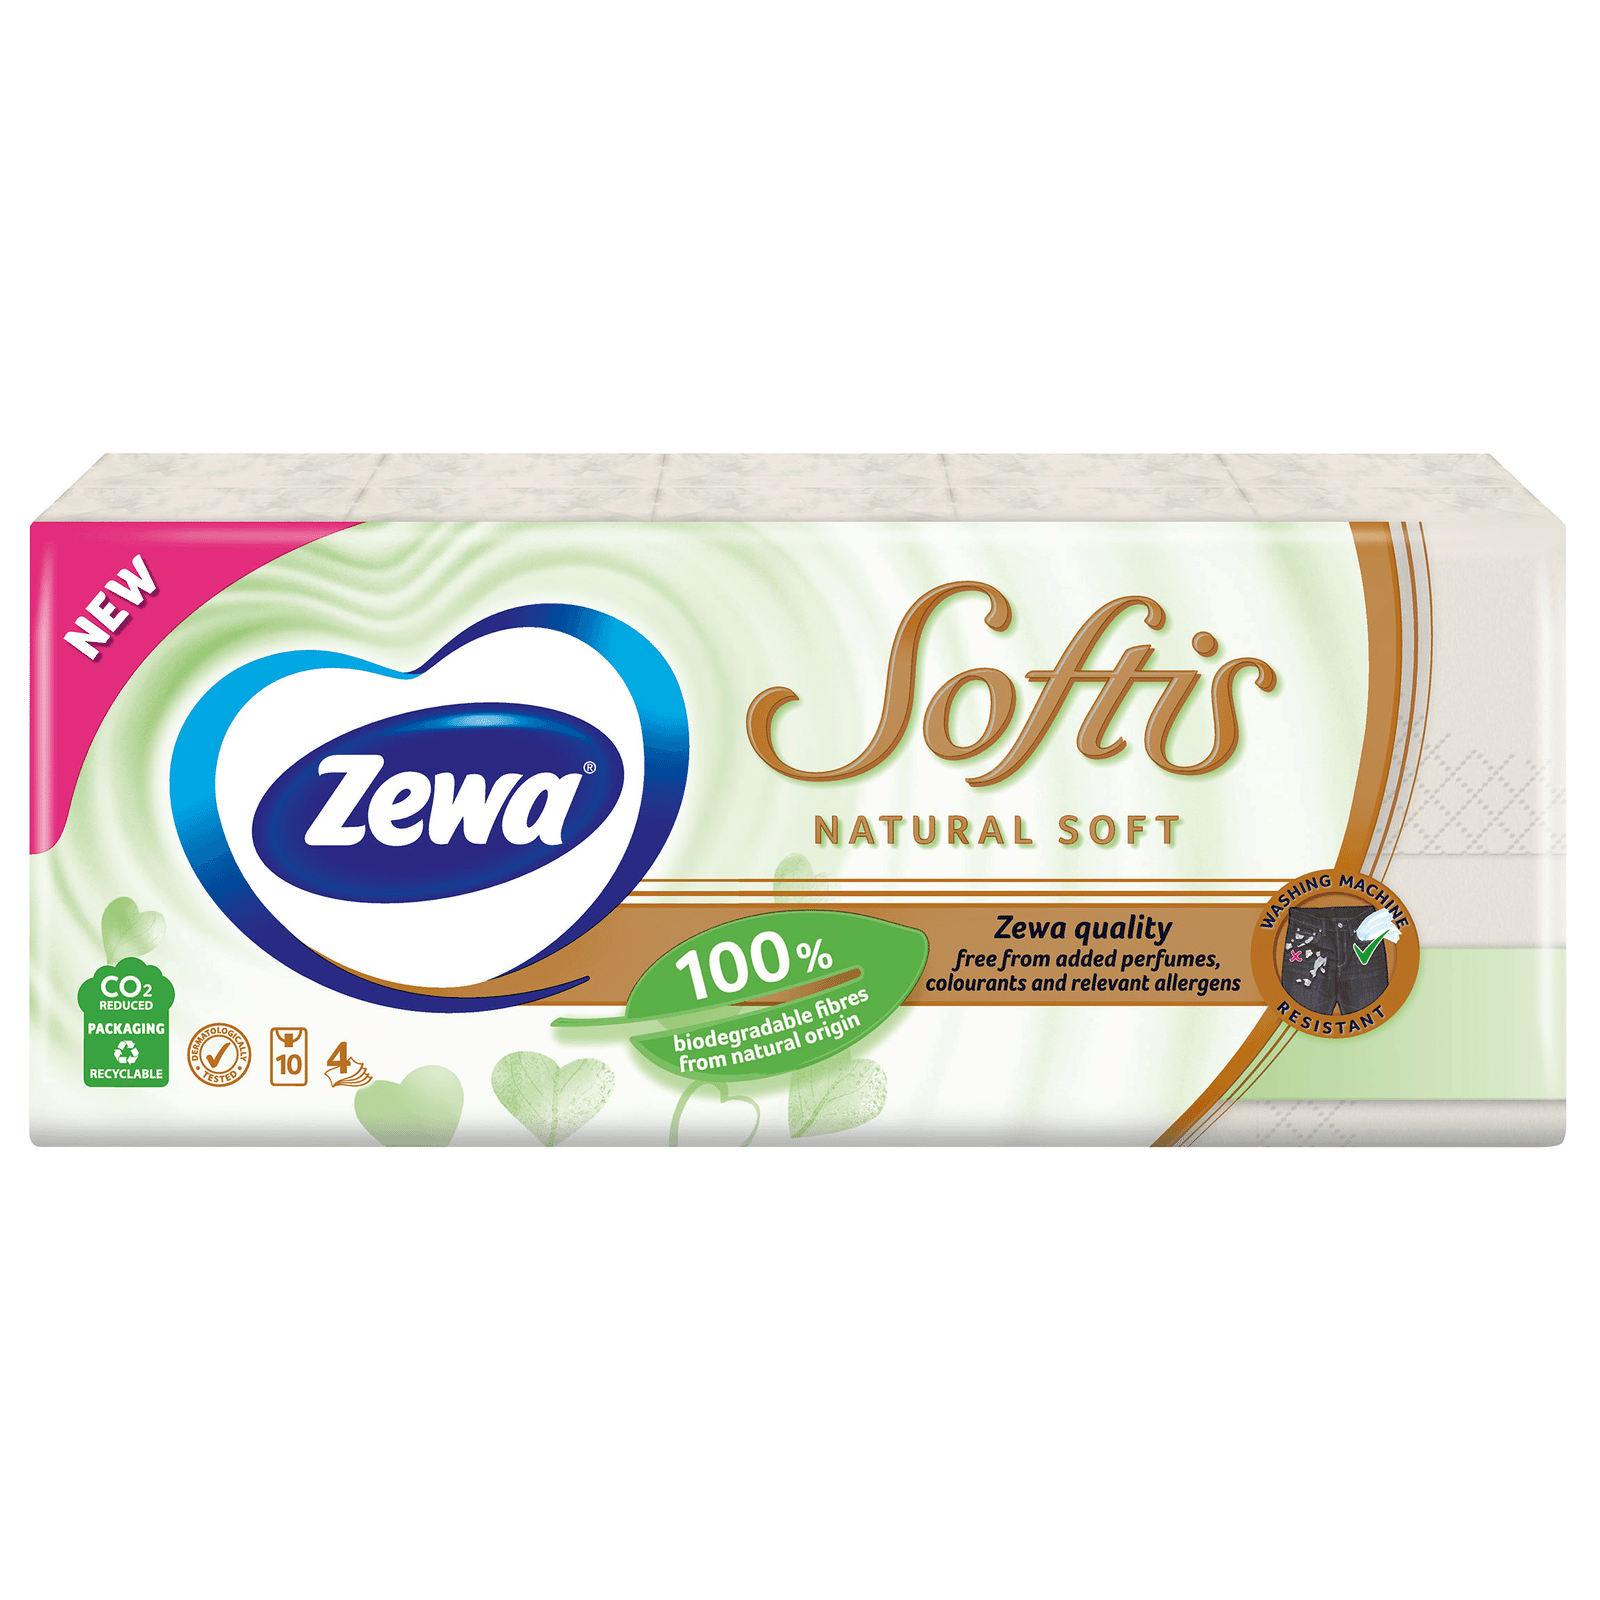 Хусточки носові Zewa Softis Natural Soft 4-шарові - 1